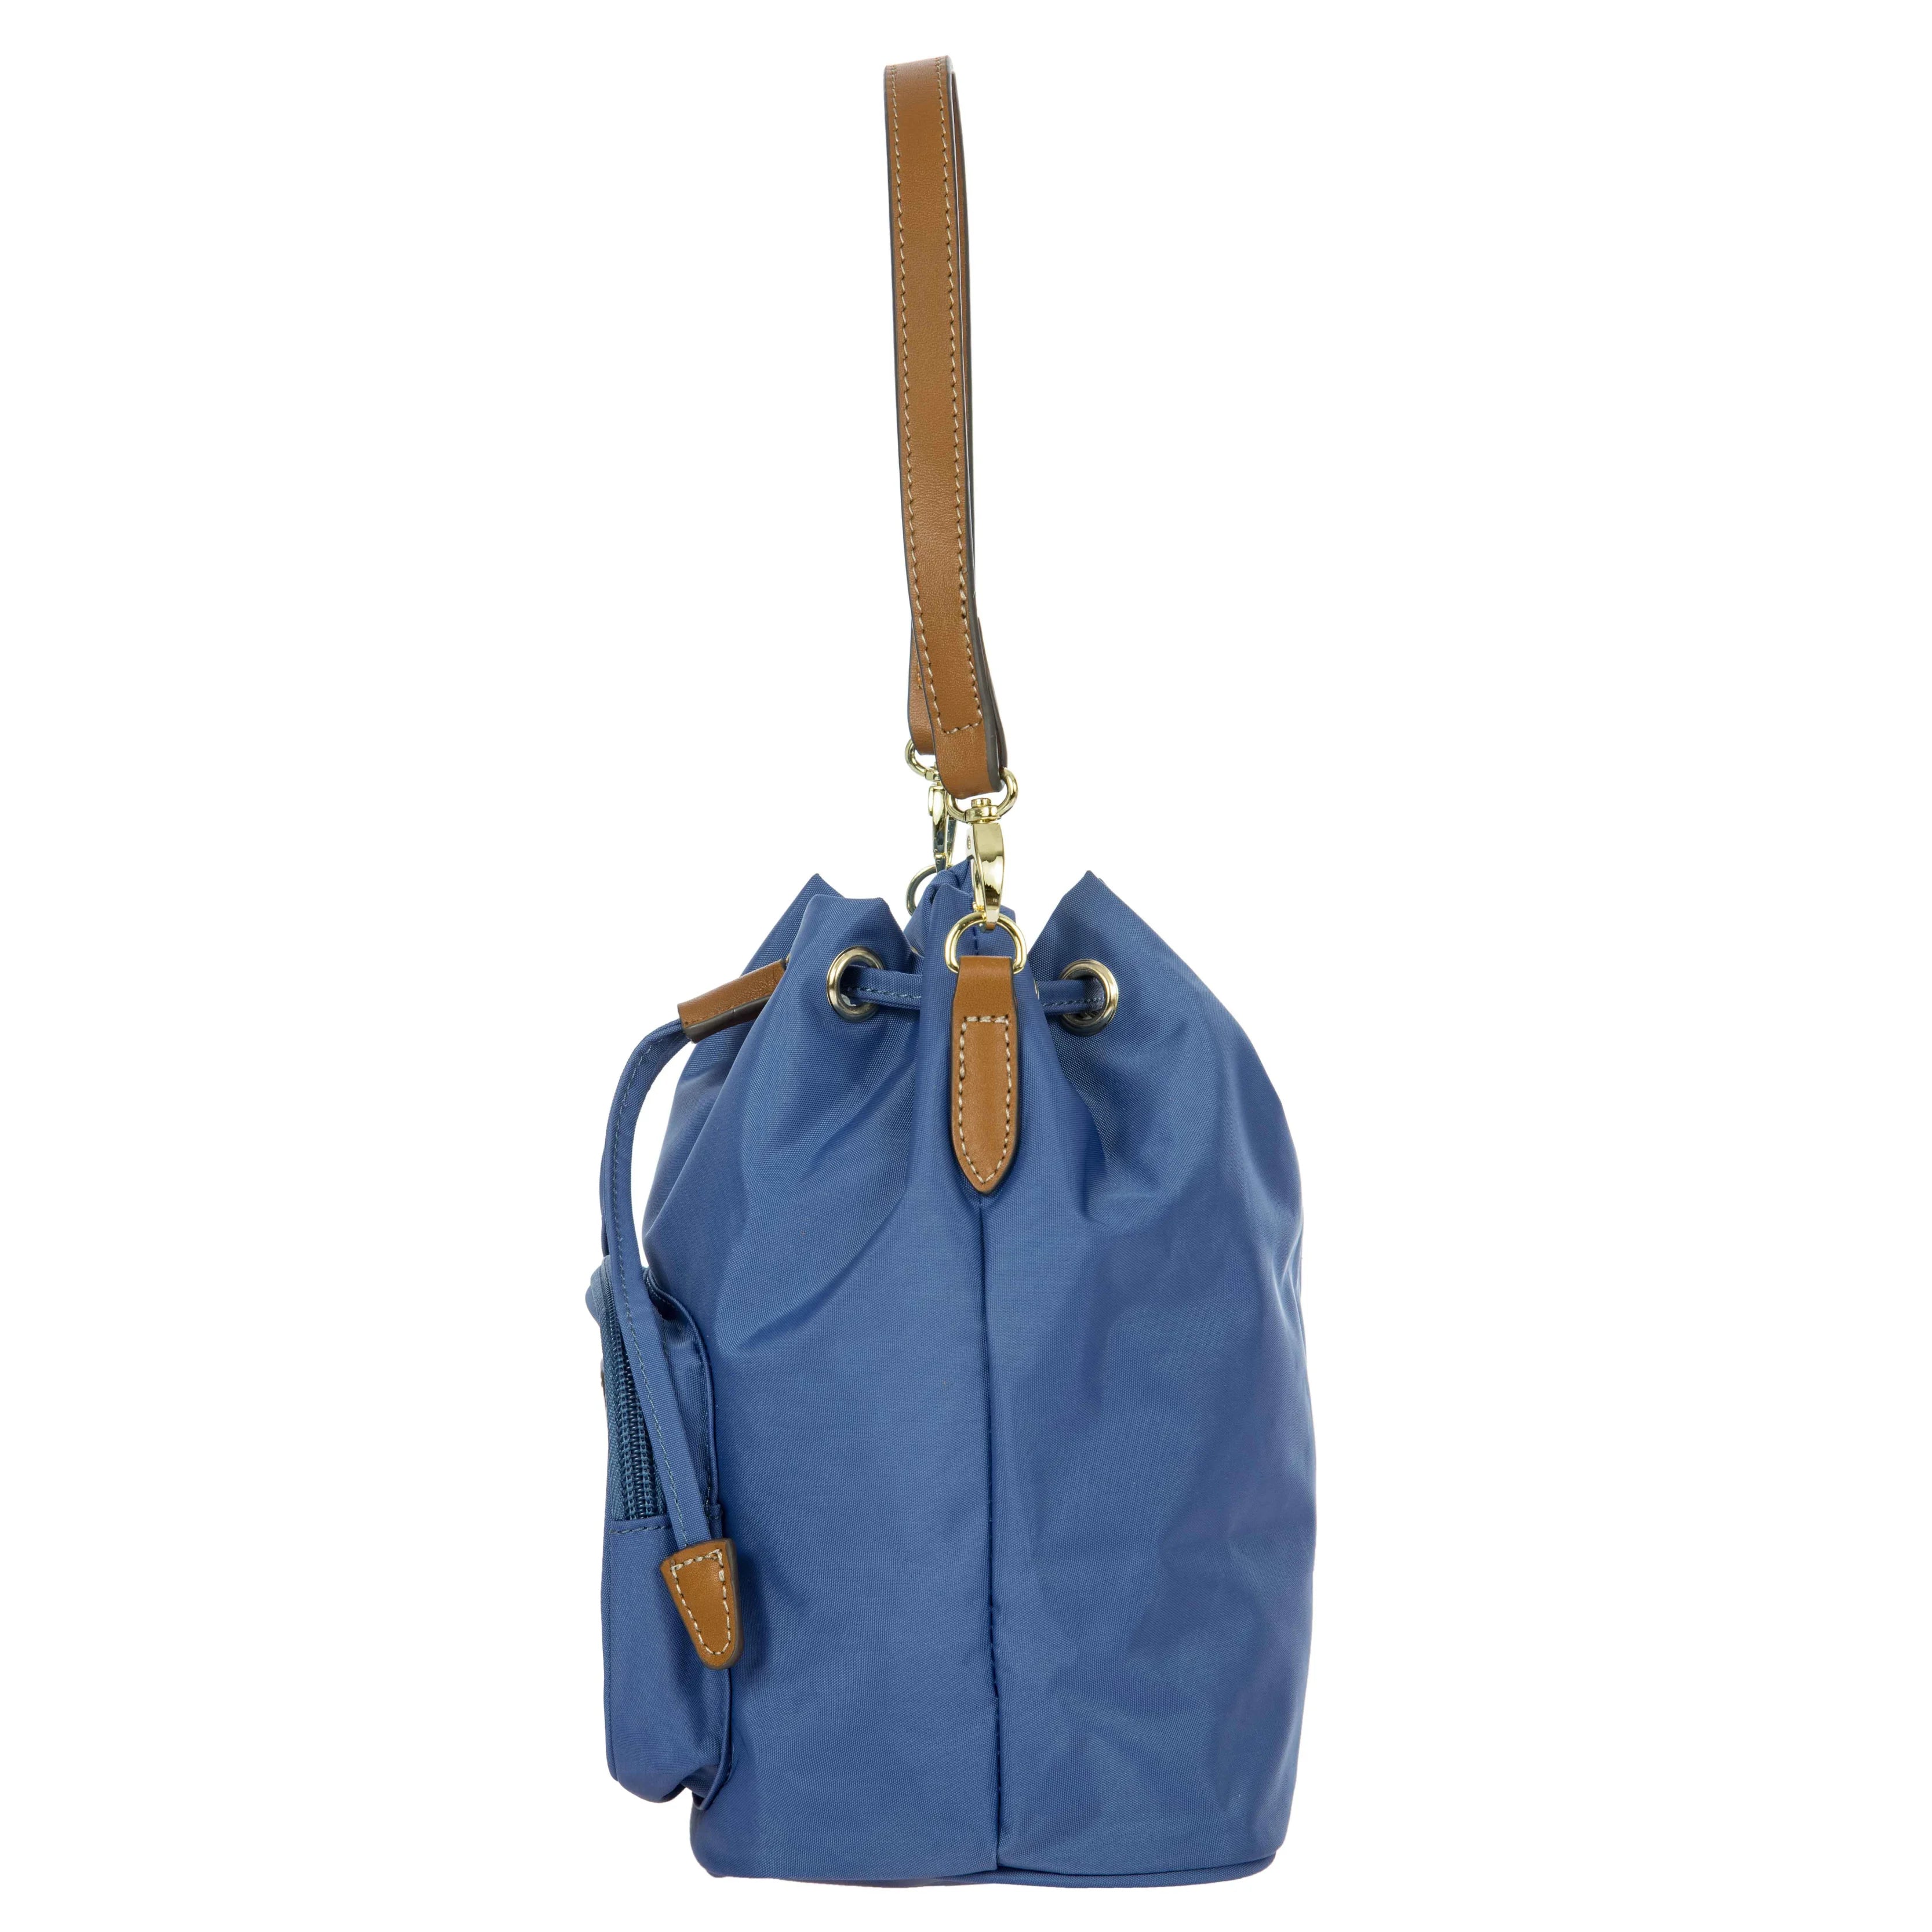 Brics X-Bag Secchiello bag 20 cm - Sahara